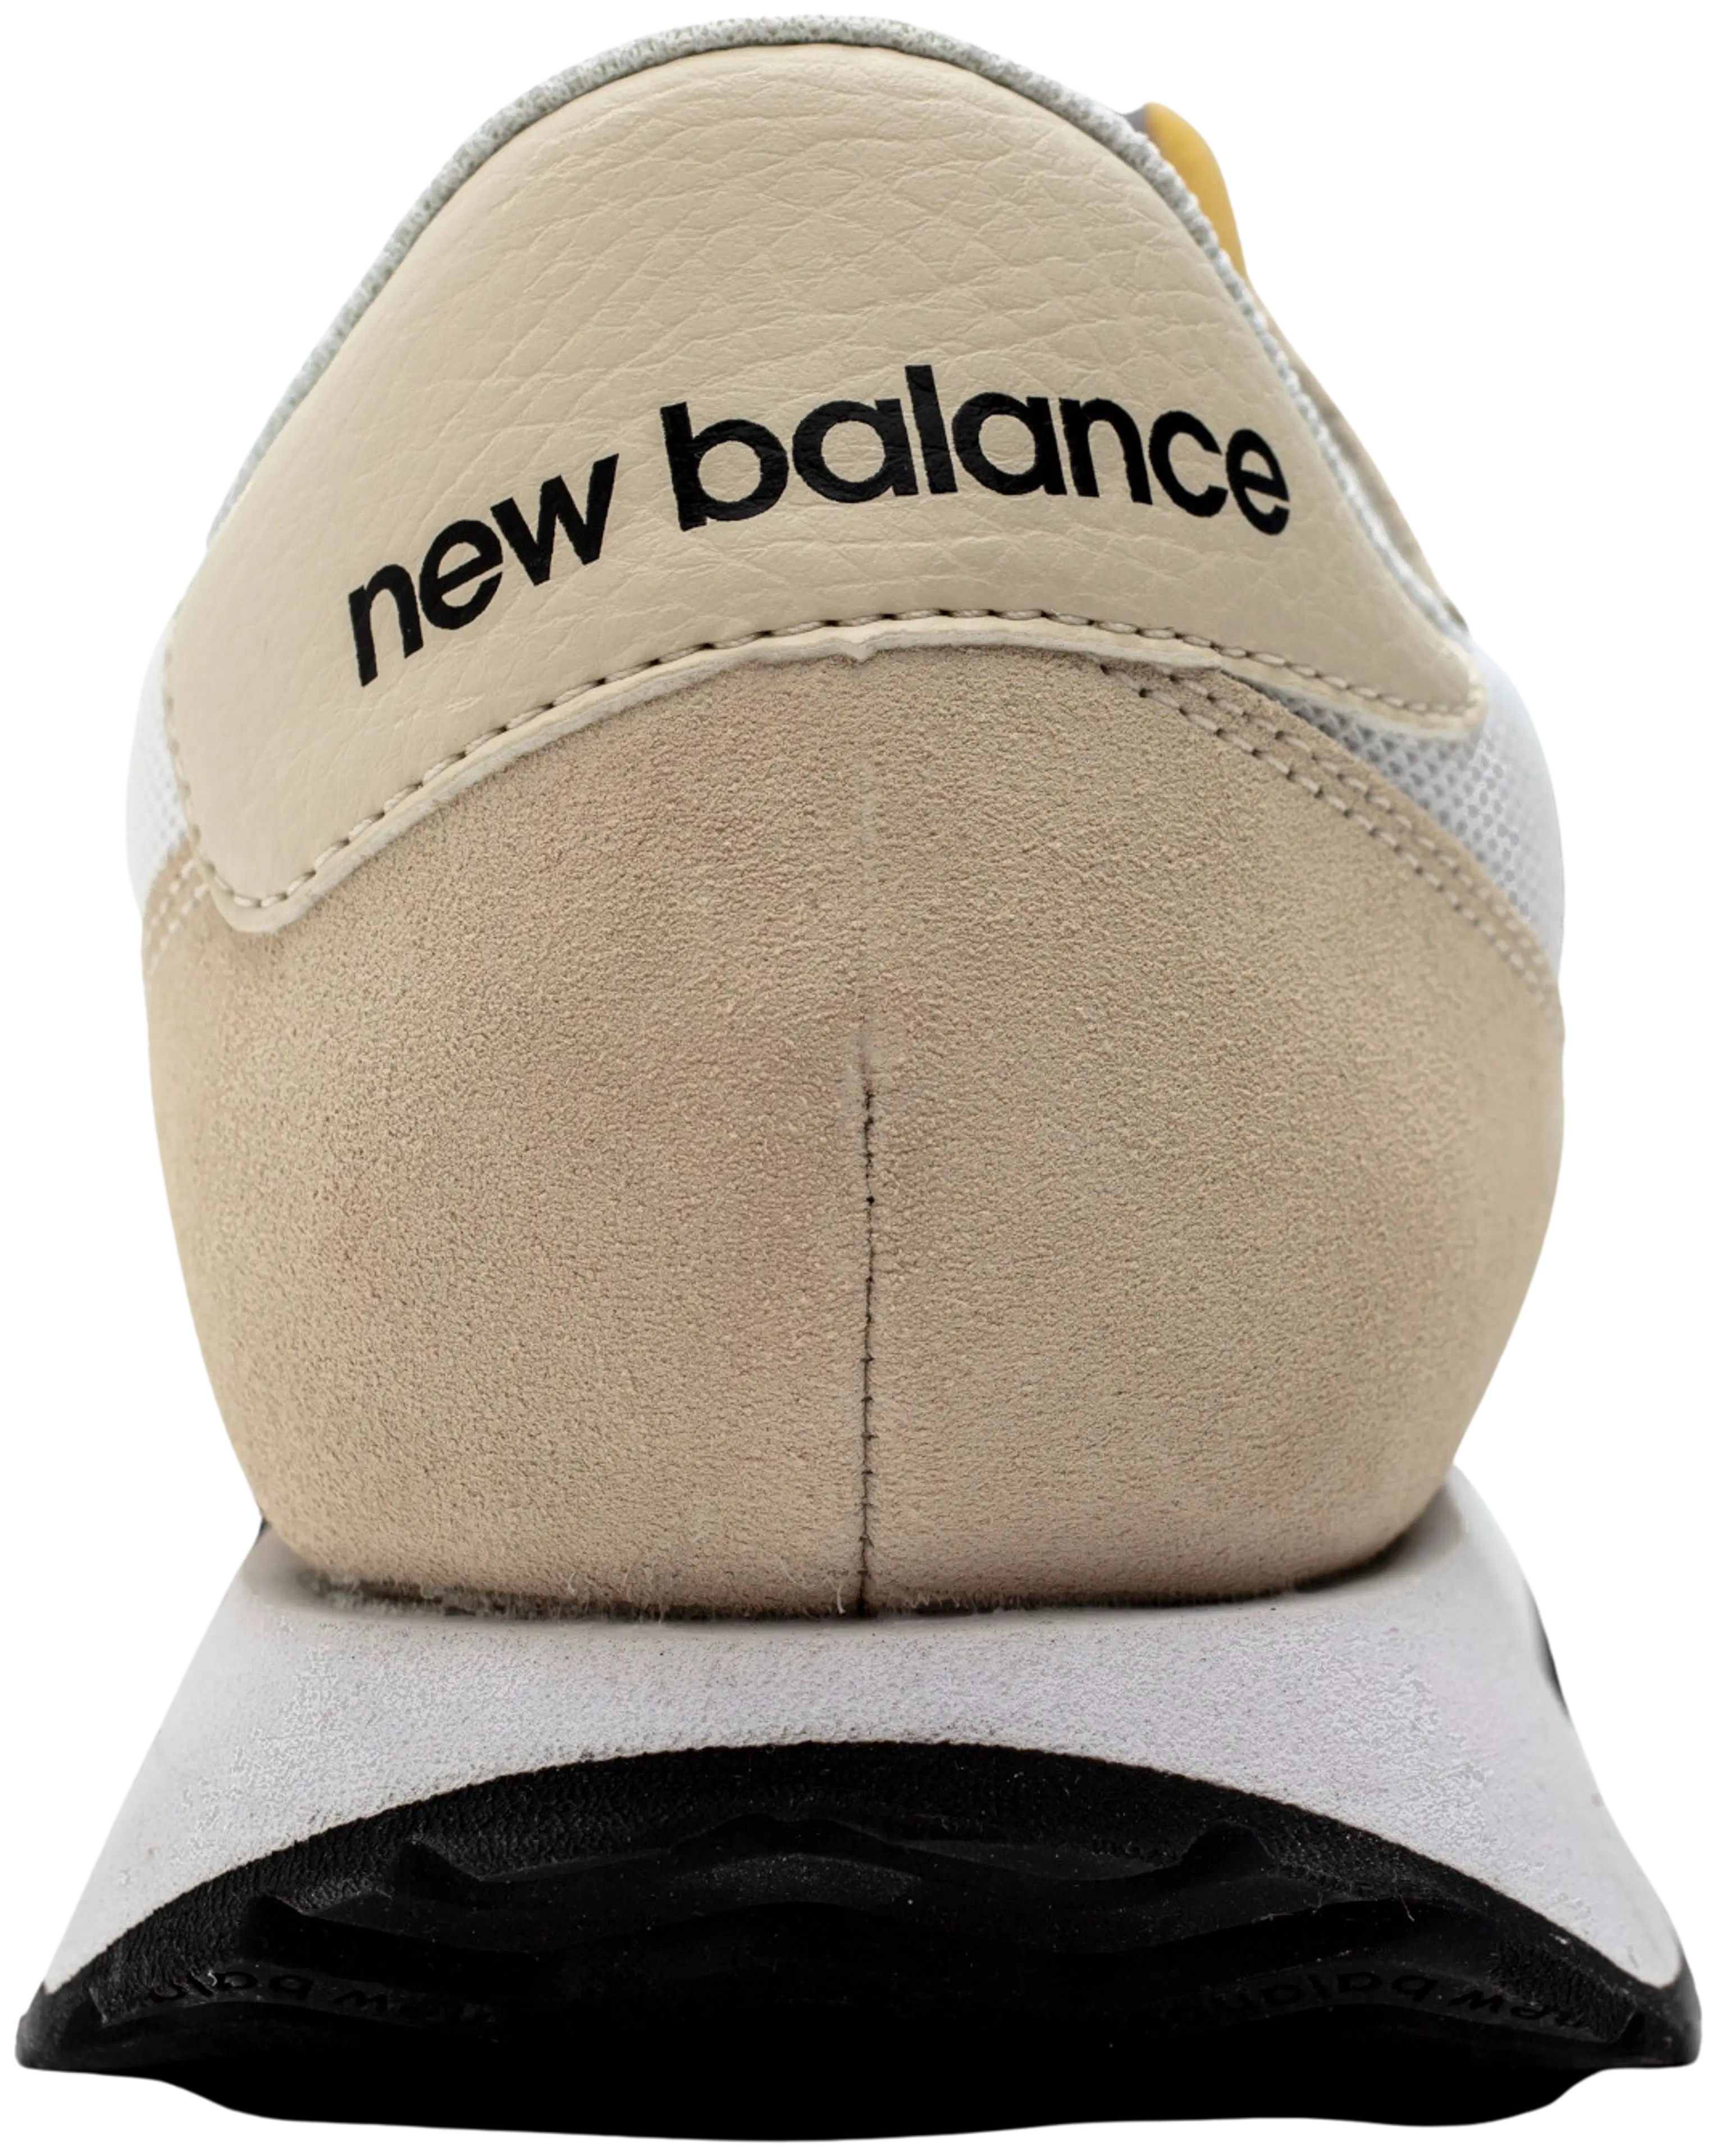 New Balance tennarit